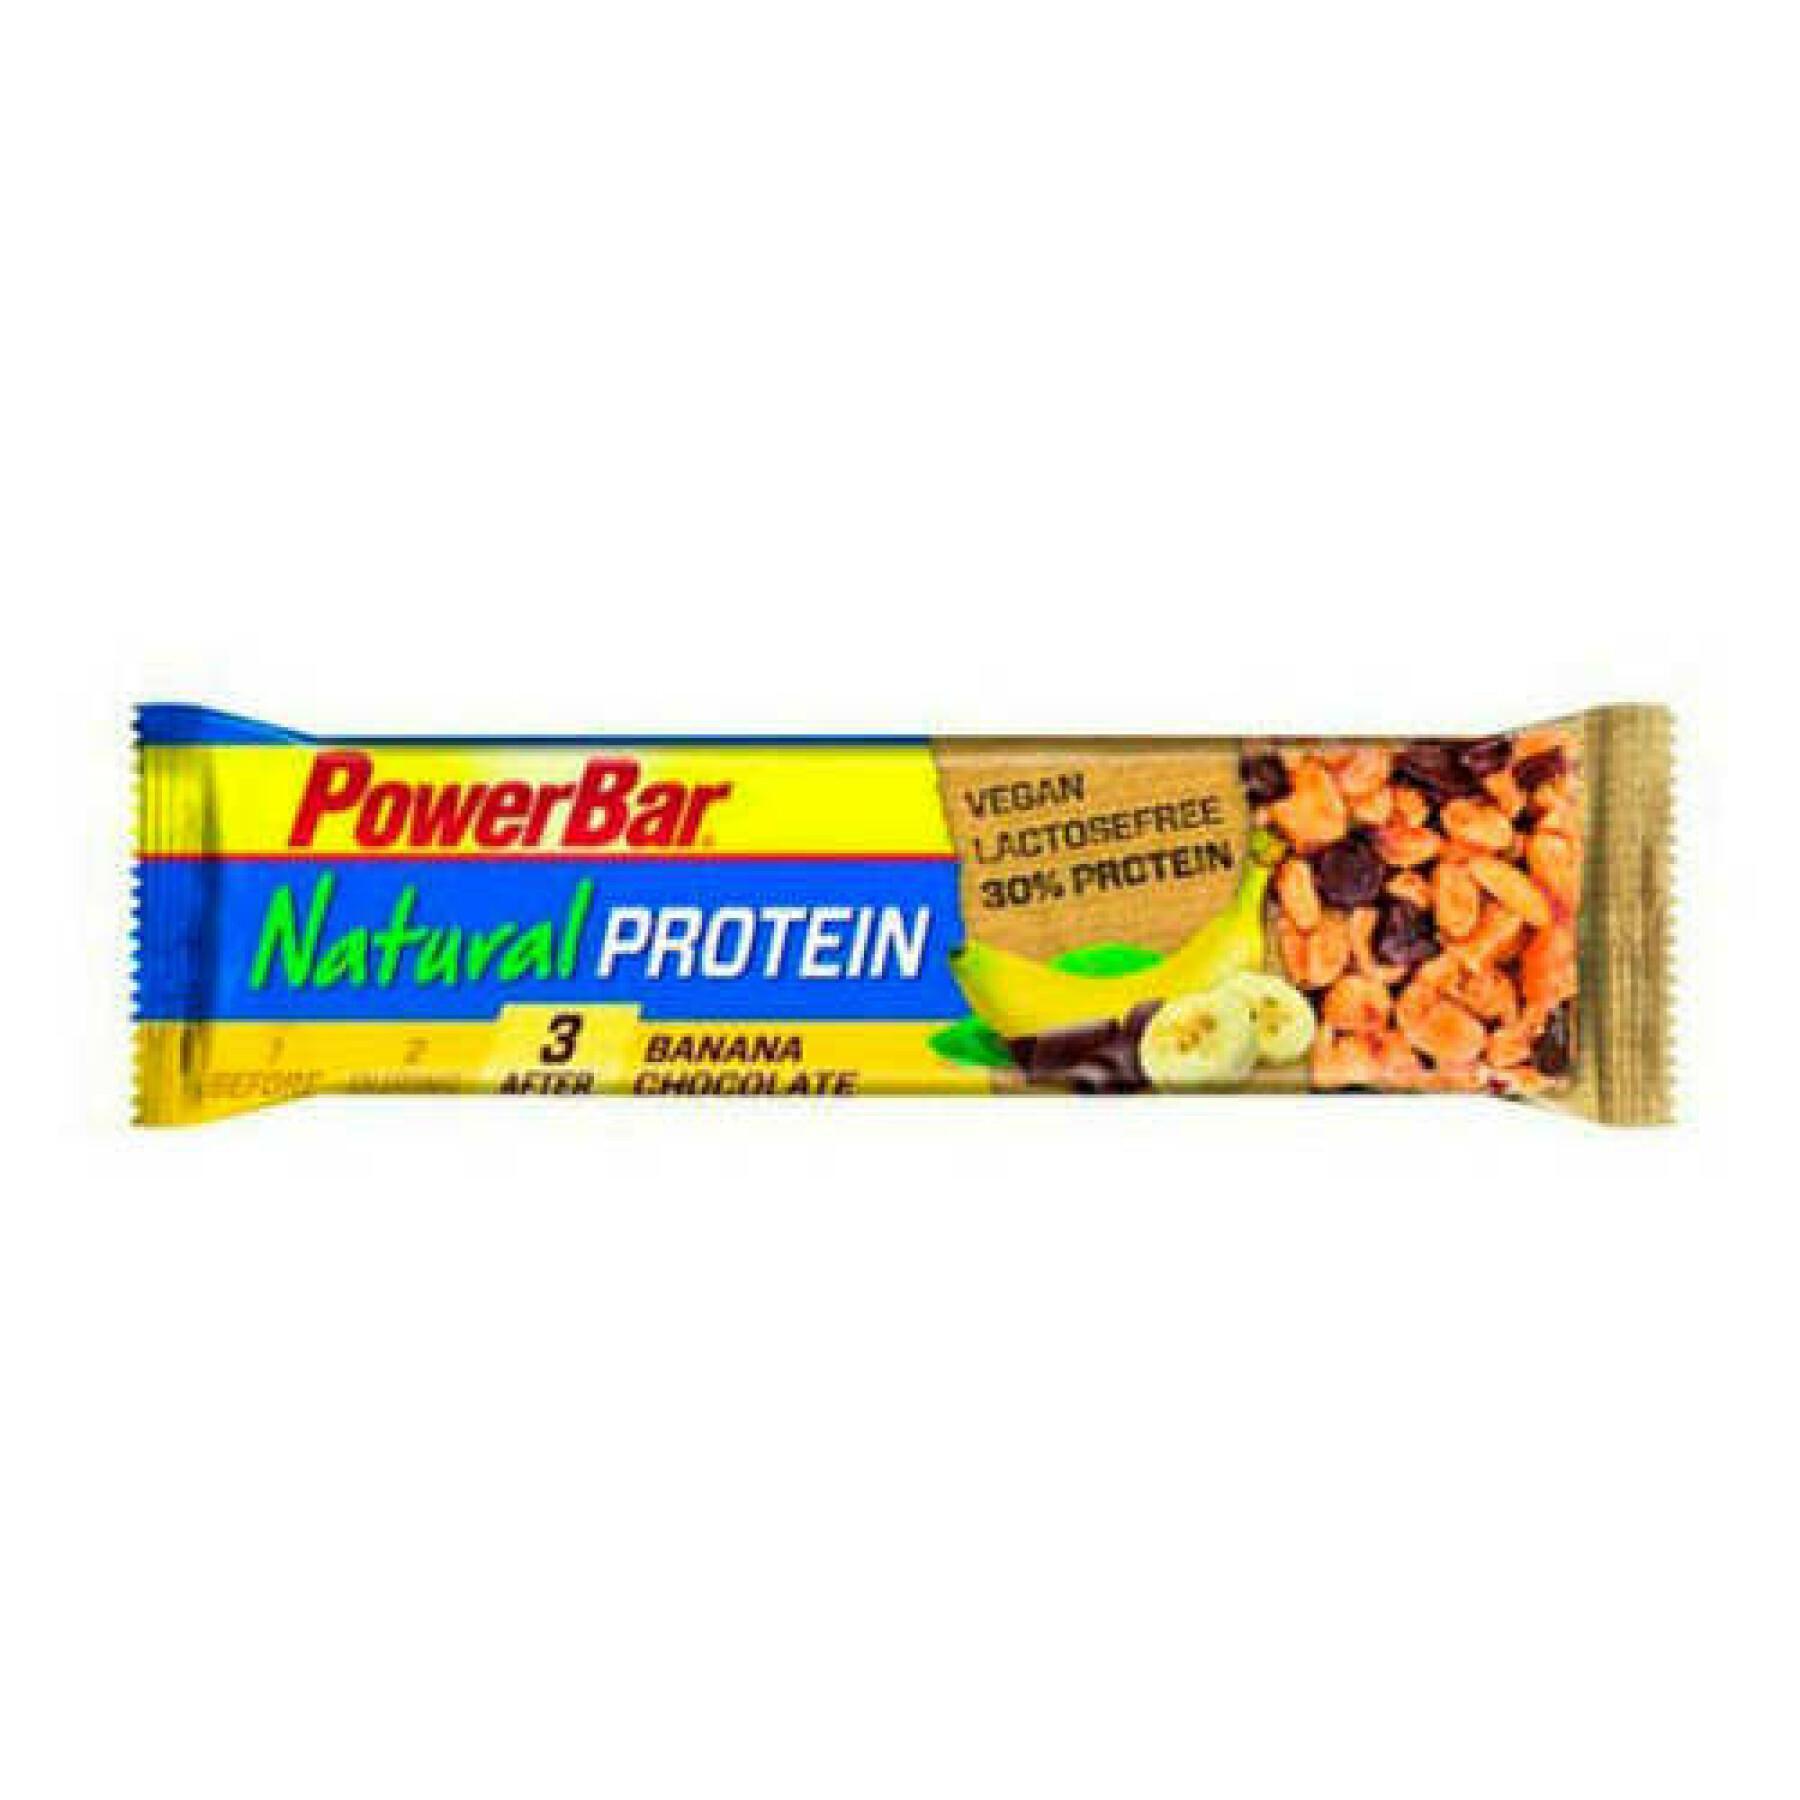 Partij van 24 repen PowerBar Natural Protein Vegan - Banana Chocolate